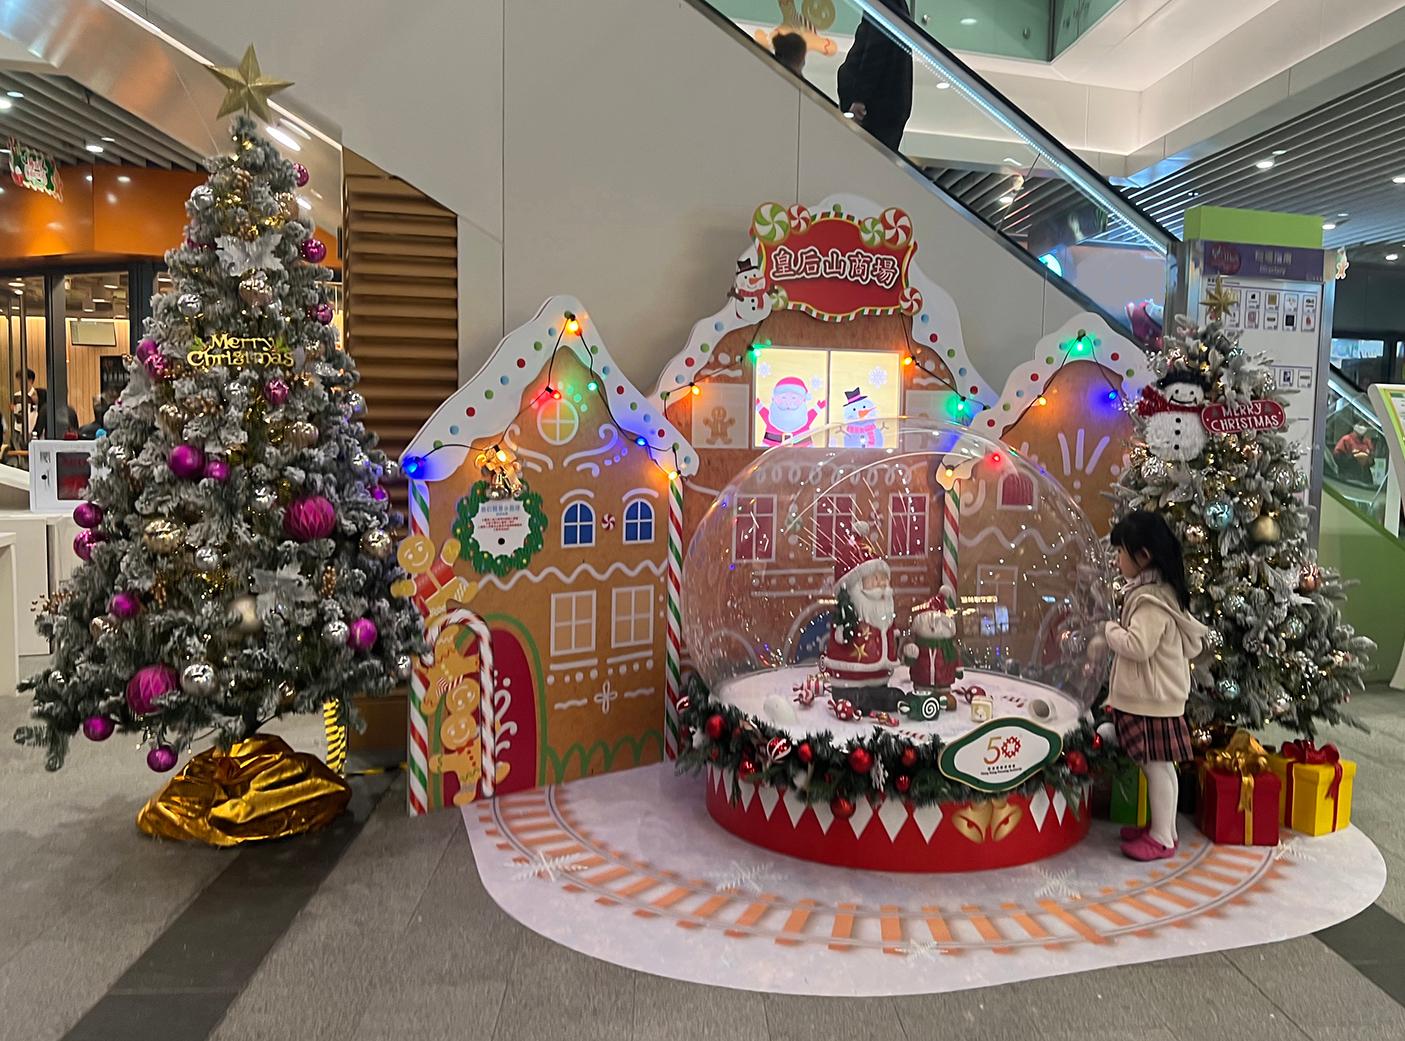 香港房屋委员会（房委会）于辖下多个商场举办圣诞节推广及夜缤纷活动，与市民欢度圣诞。图示房委会粉岭皇后山商场的圣诞装饰。